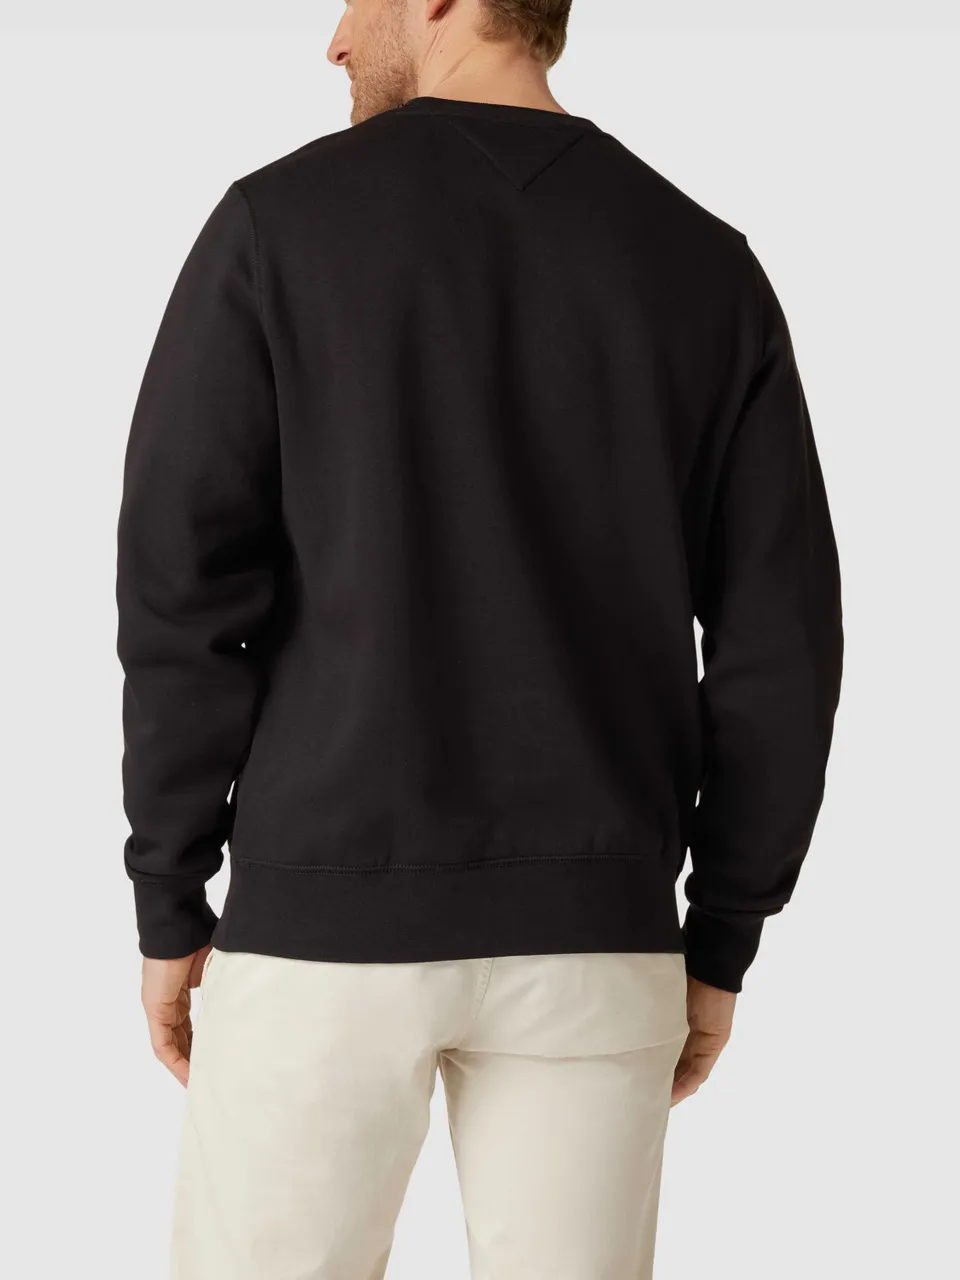 Tommy Hilfiger LOGO Modell Label-Stitching Sweatshirt mit MW0MW11596 vergleichen Preise - \'TOMMY SWEAT